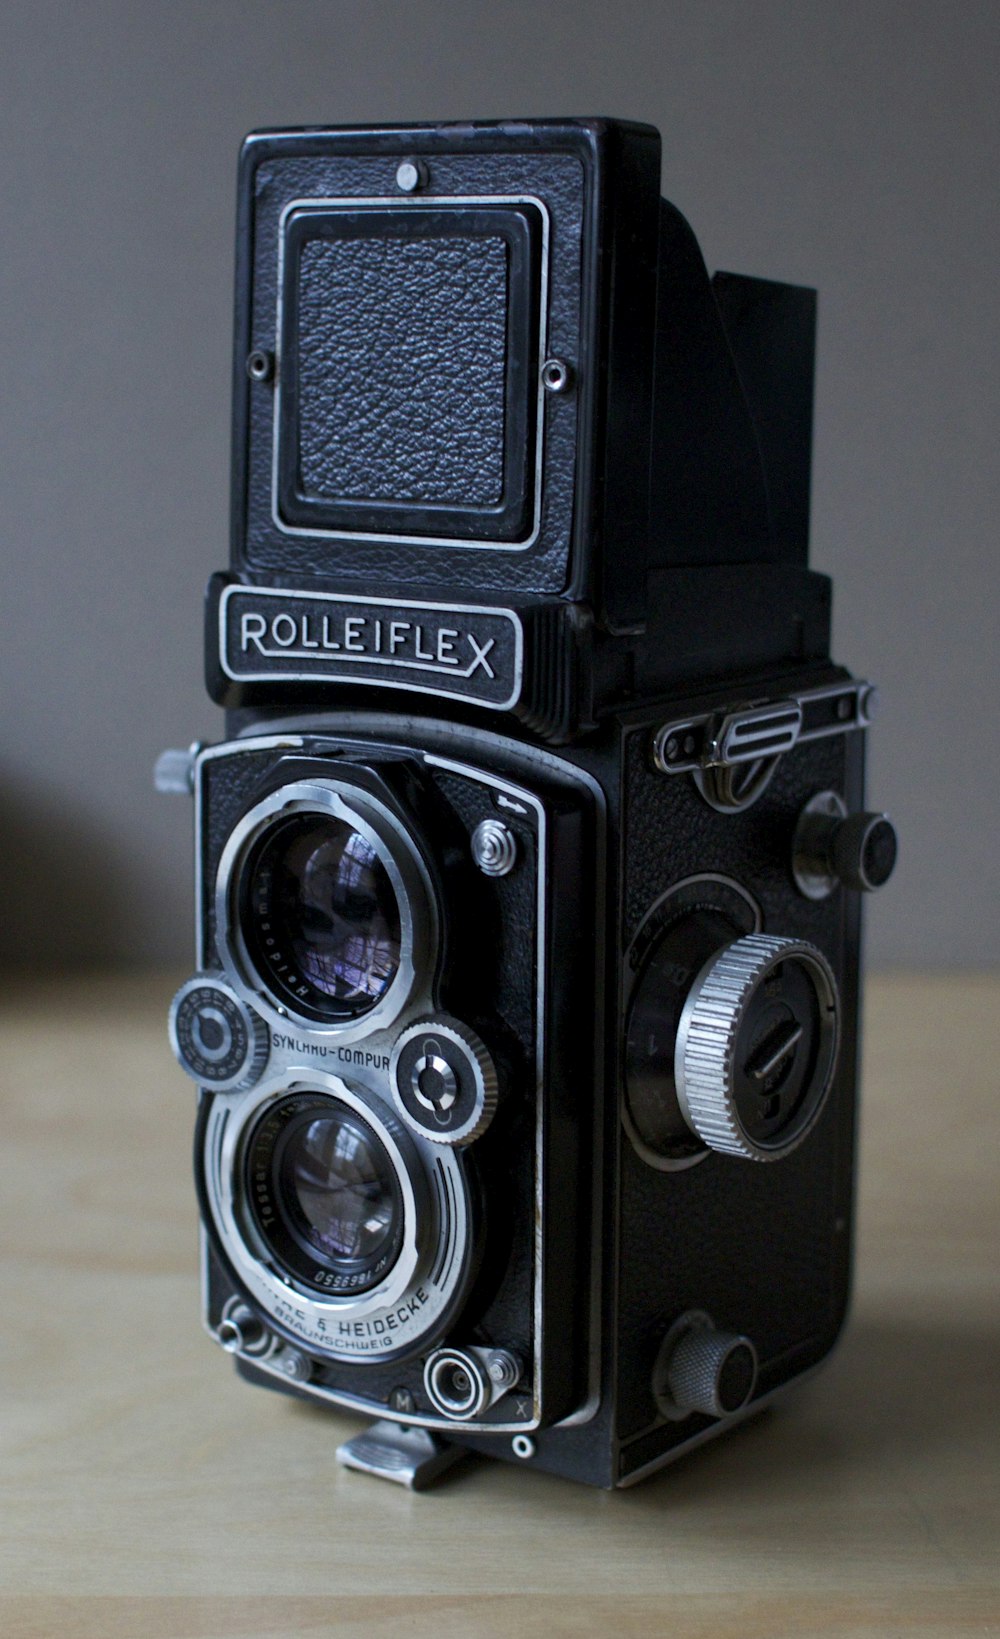 Fotocamera reflex digitale Nikon nera su tavolo di legno marrone